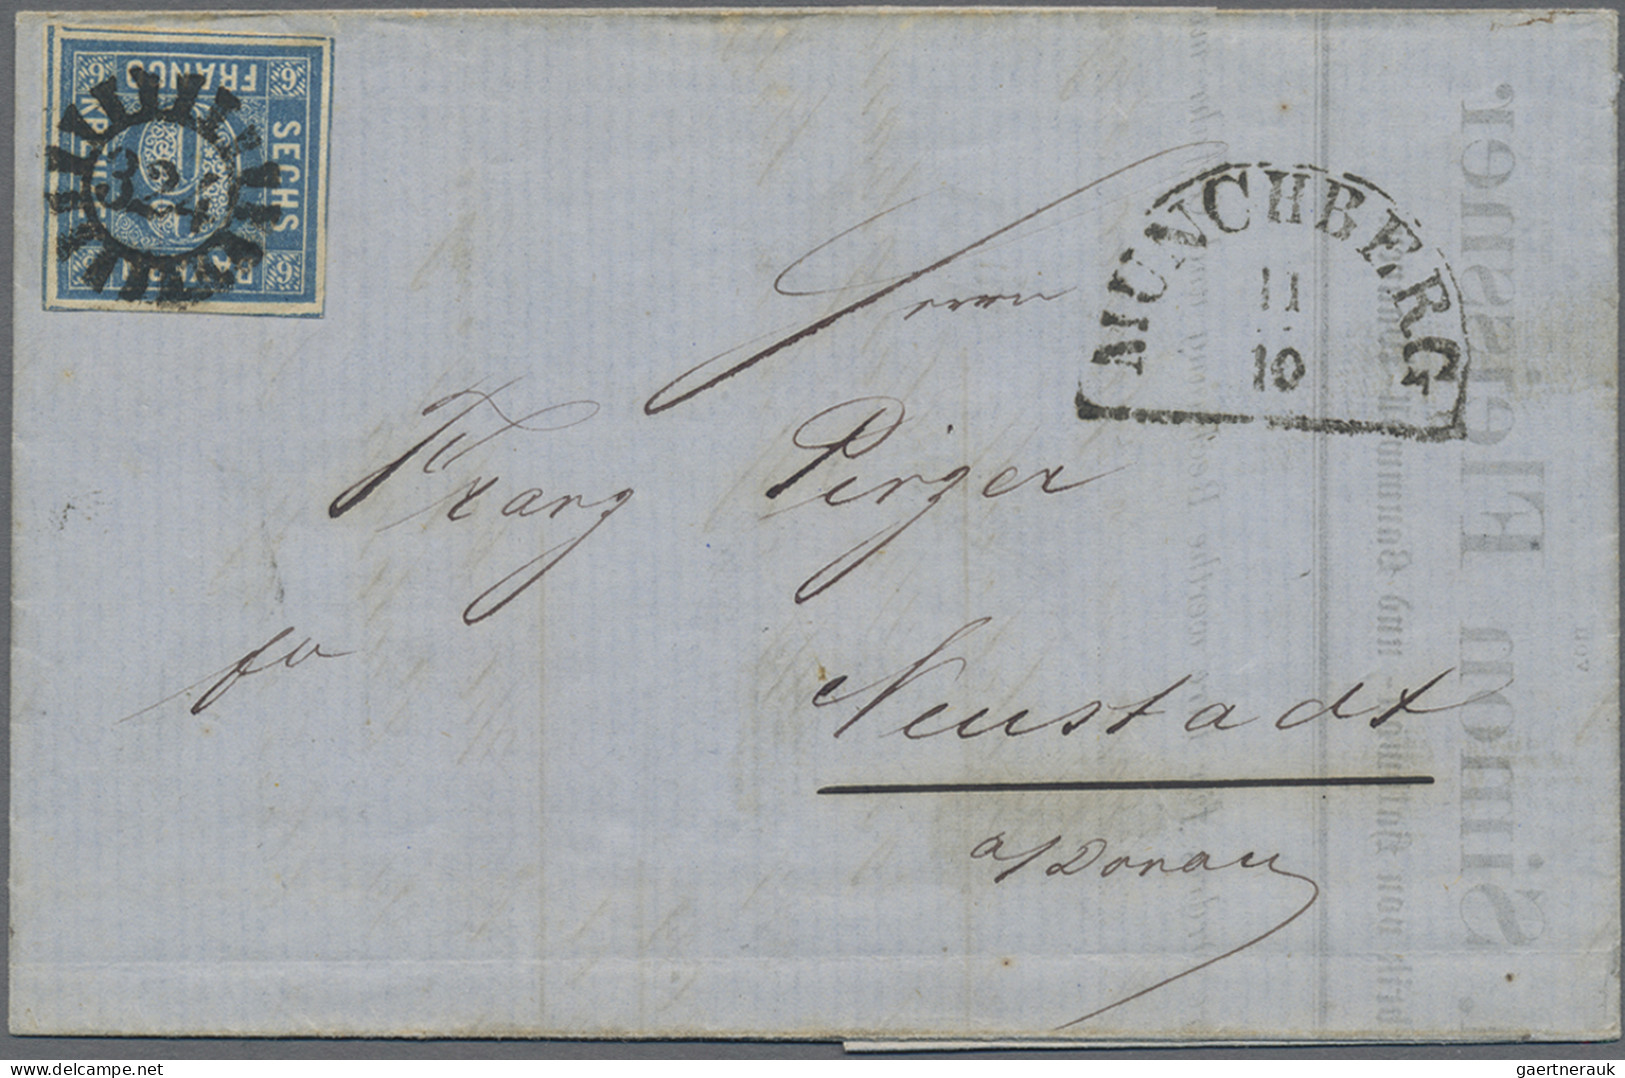 Bayern - Marken und Briefe: 1864/1867, Quadratausgabe 6 Kr. blau, fünf Einzelfra